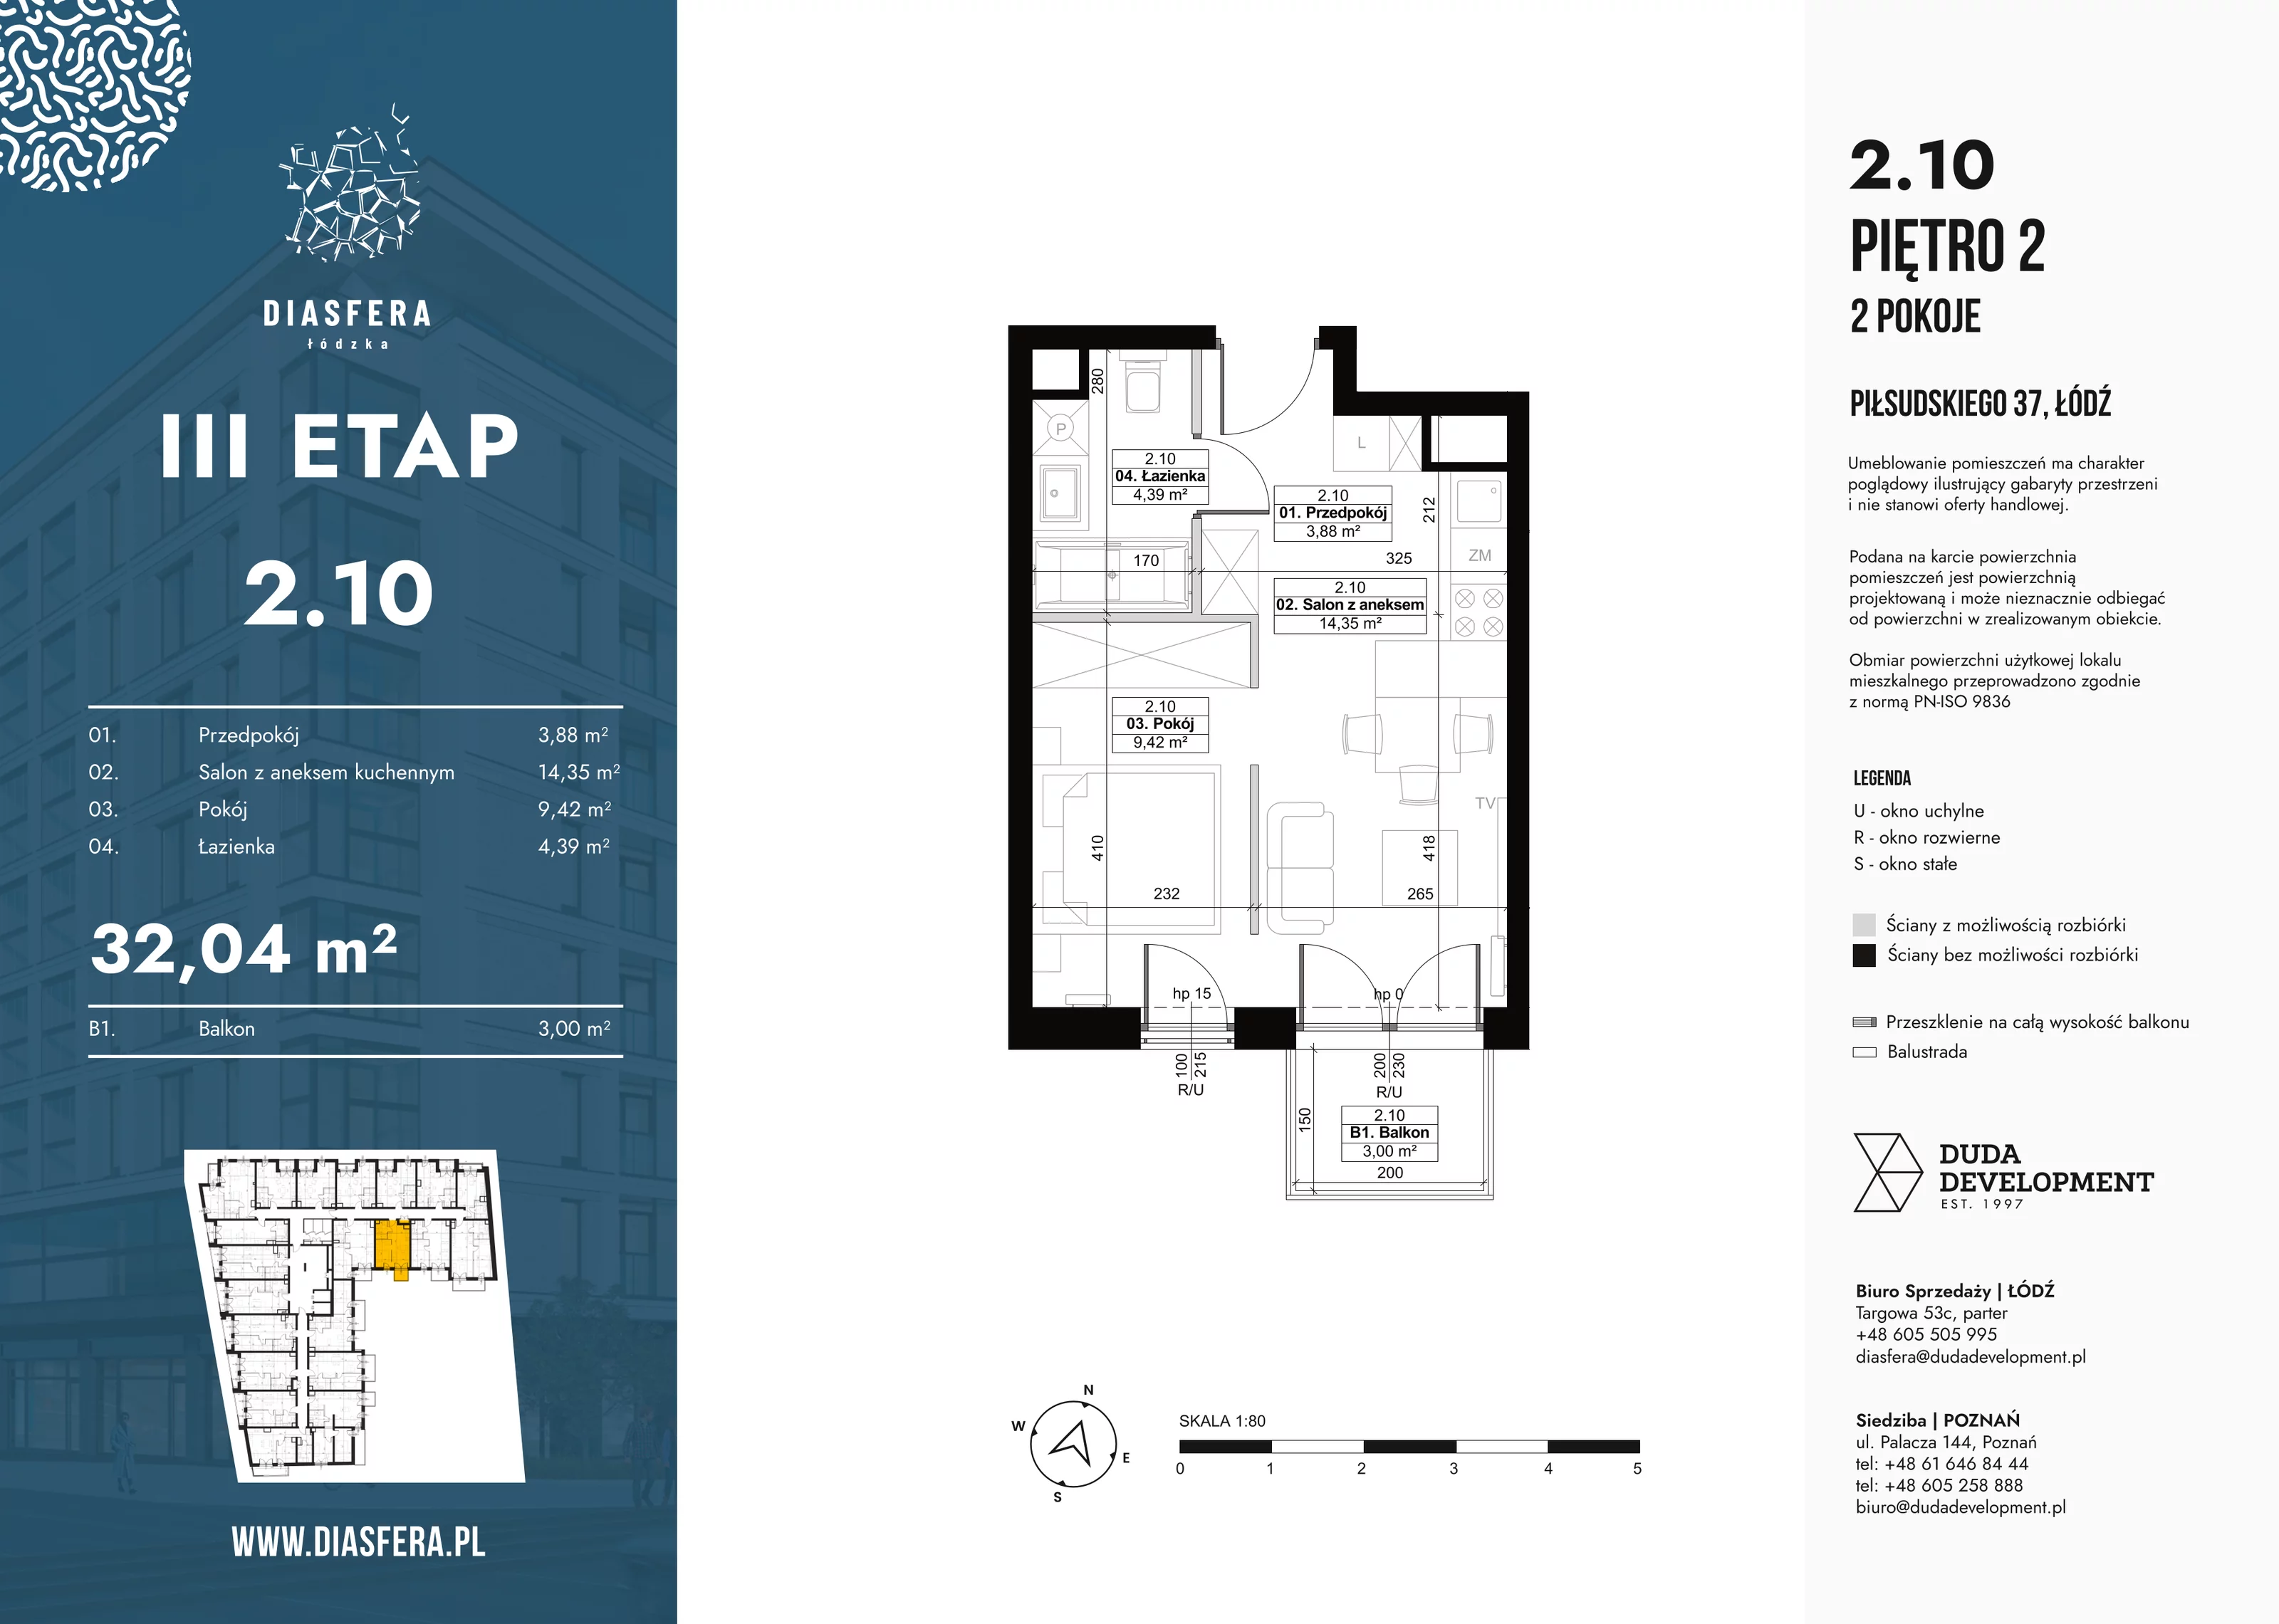 Mieszkanie 32,04 m², piętro 2, oferta nr 2_10, Diasfera III, Łódź, Śródmieście, al. Piłsudskiego 37